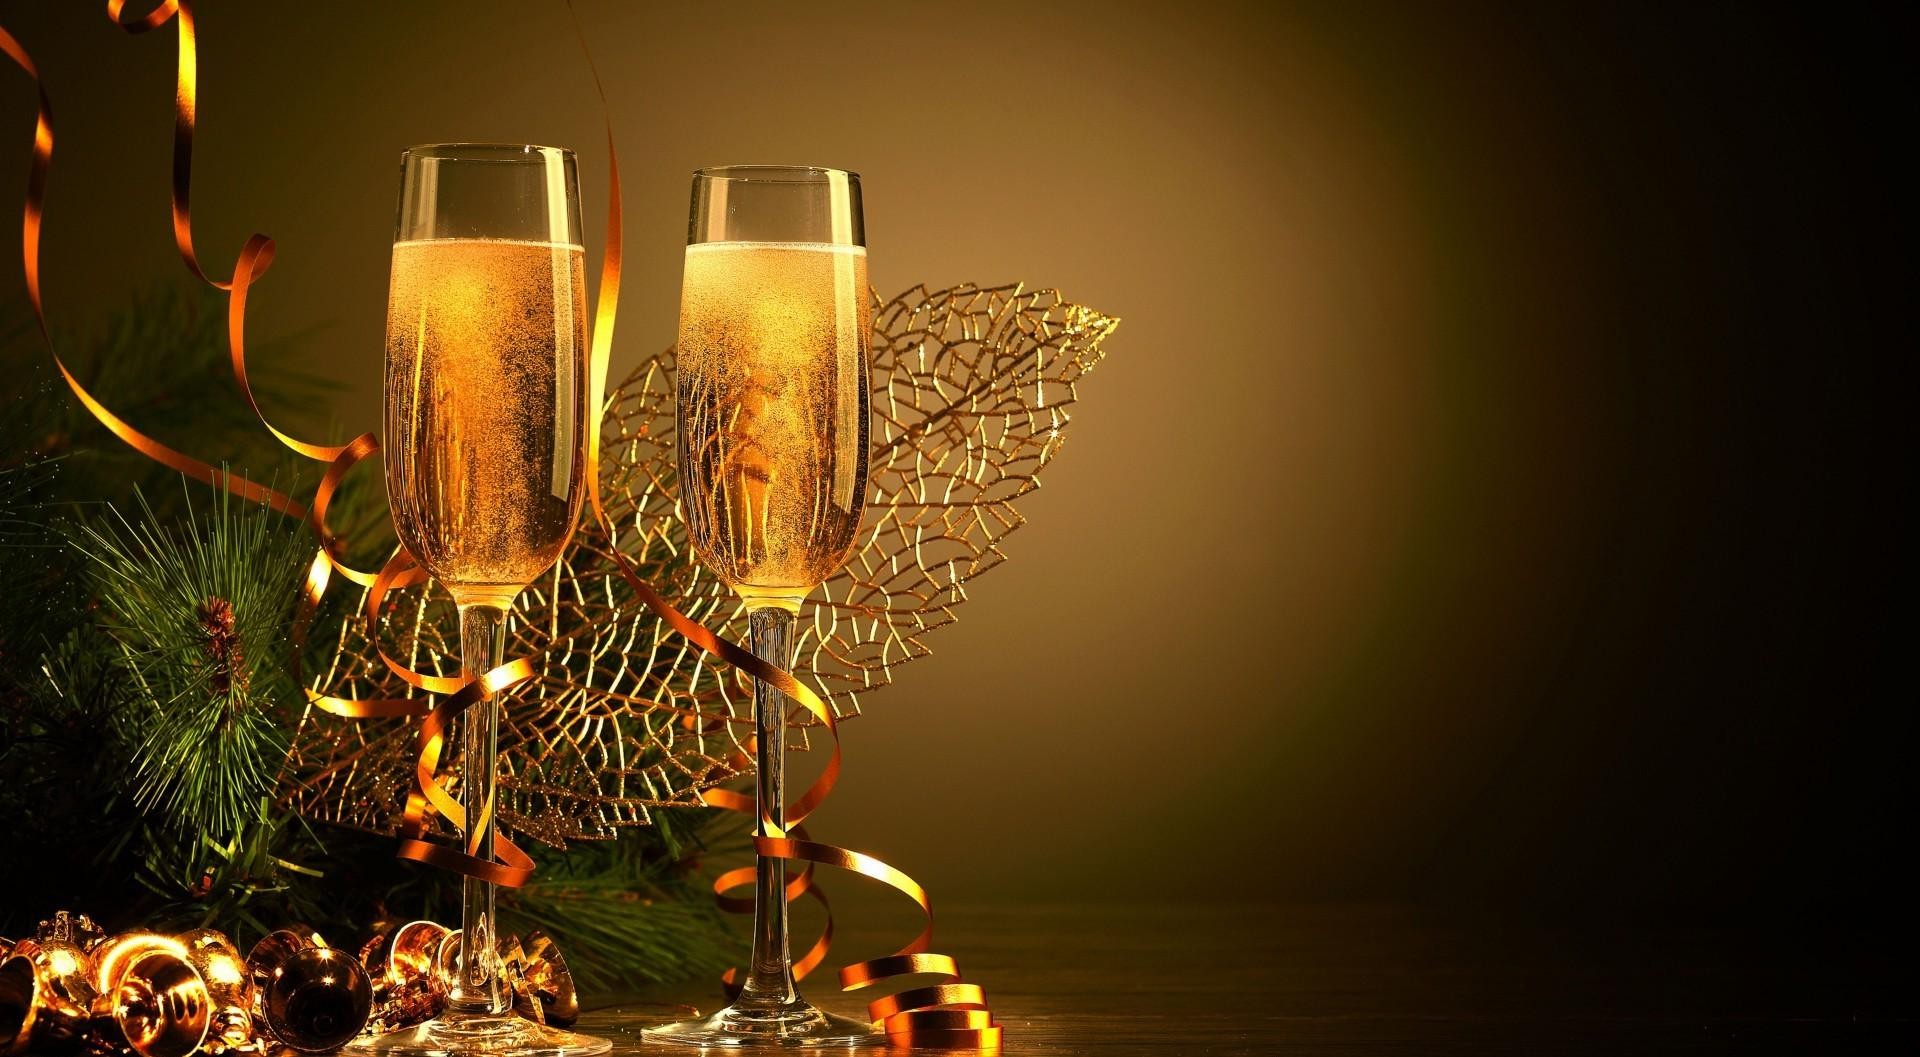 nuova carta da parati romantica,bevanda,calici di champagne,illuminazione,bicchiere,champagne